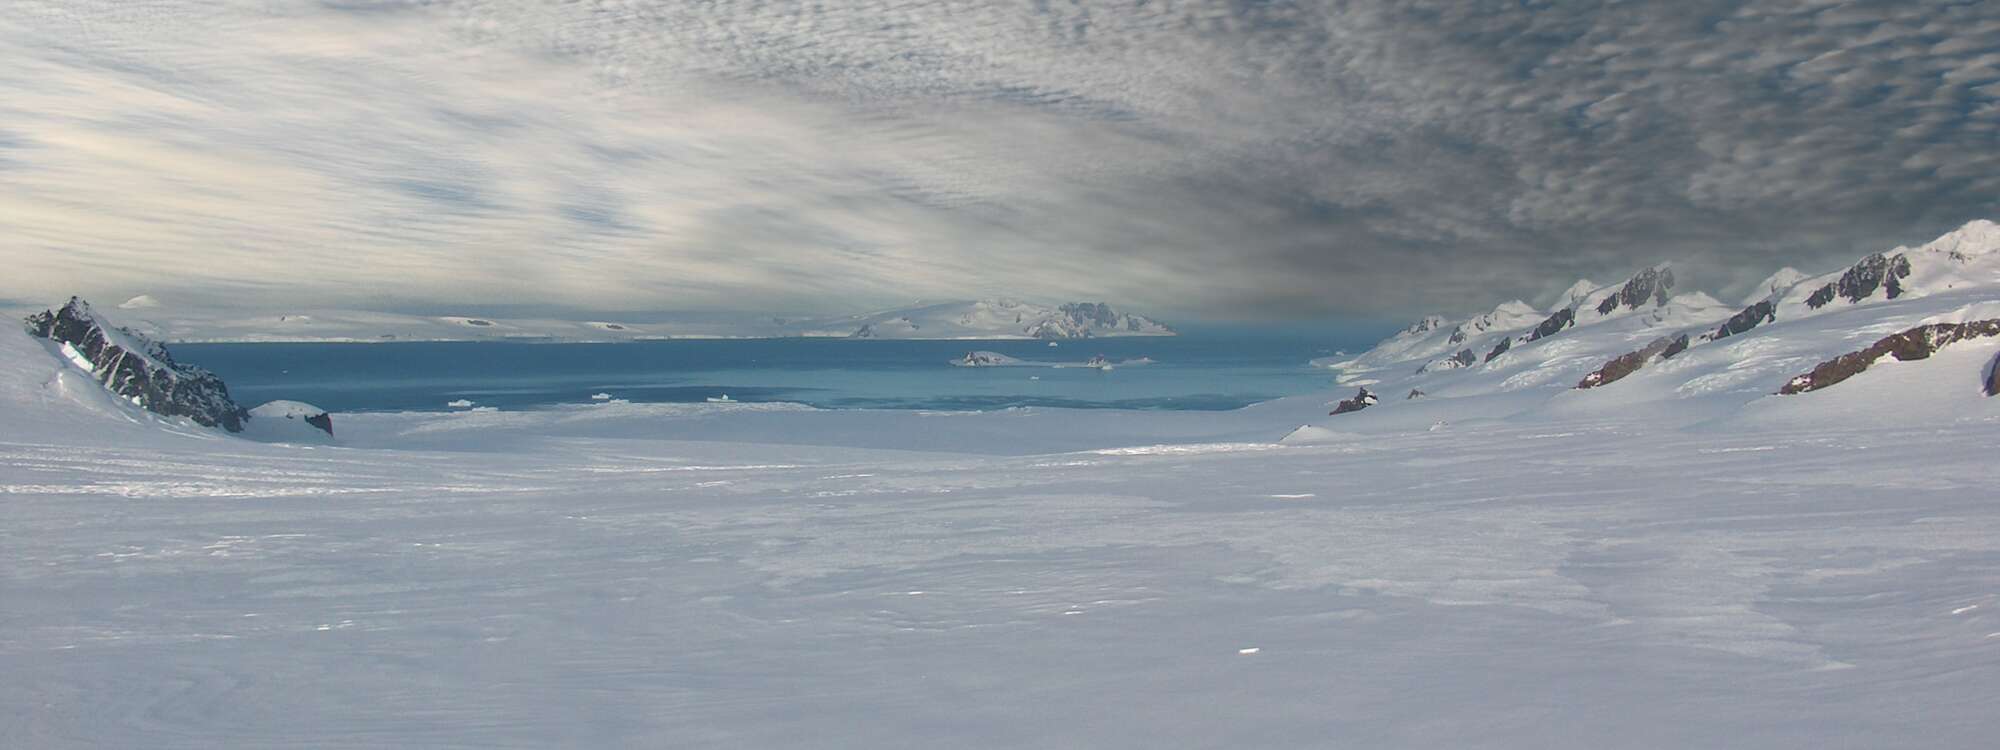 Längsansicht des Huron-Gletschers im Osten der Insel Livingston auf den Südshetlandinseln, mit McFarlane Strait, Half Moon Island und Greenwich Island im Hintergrund in der Region Antarktis